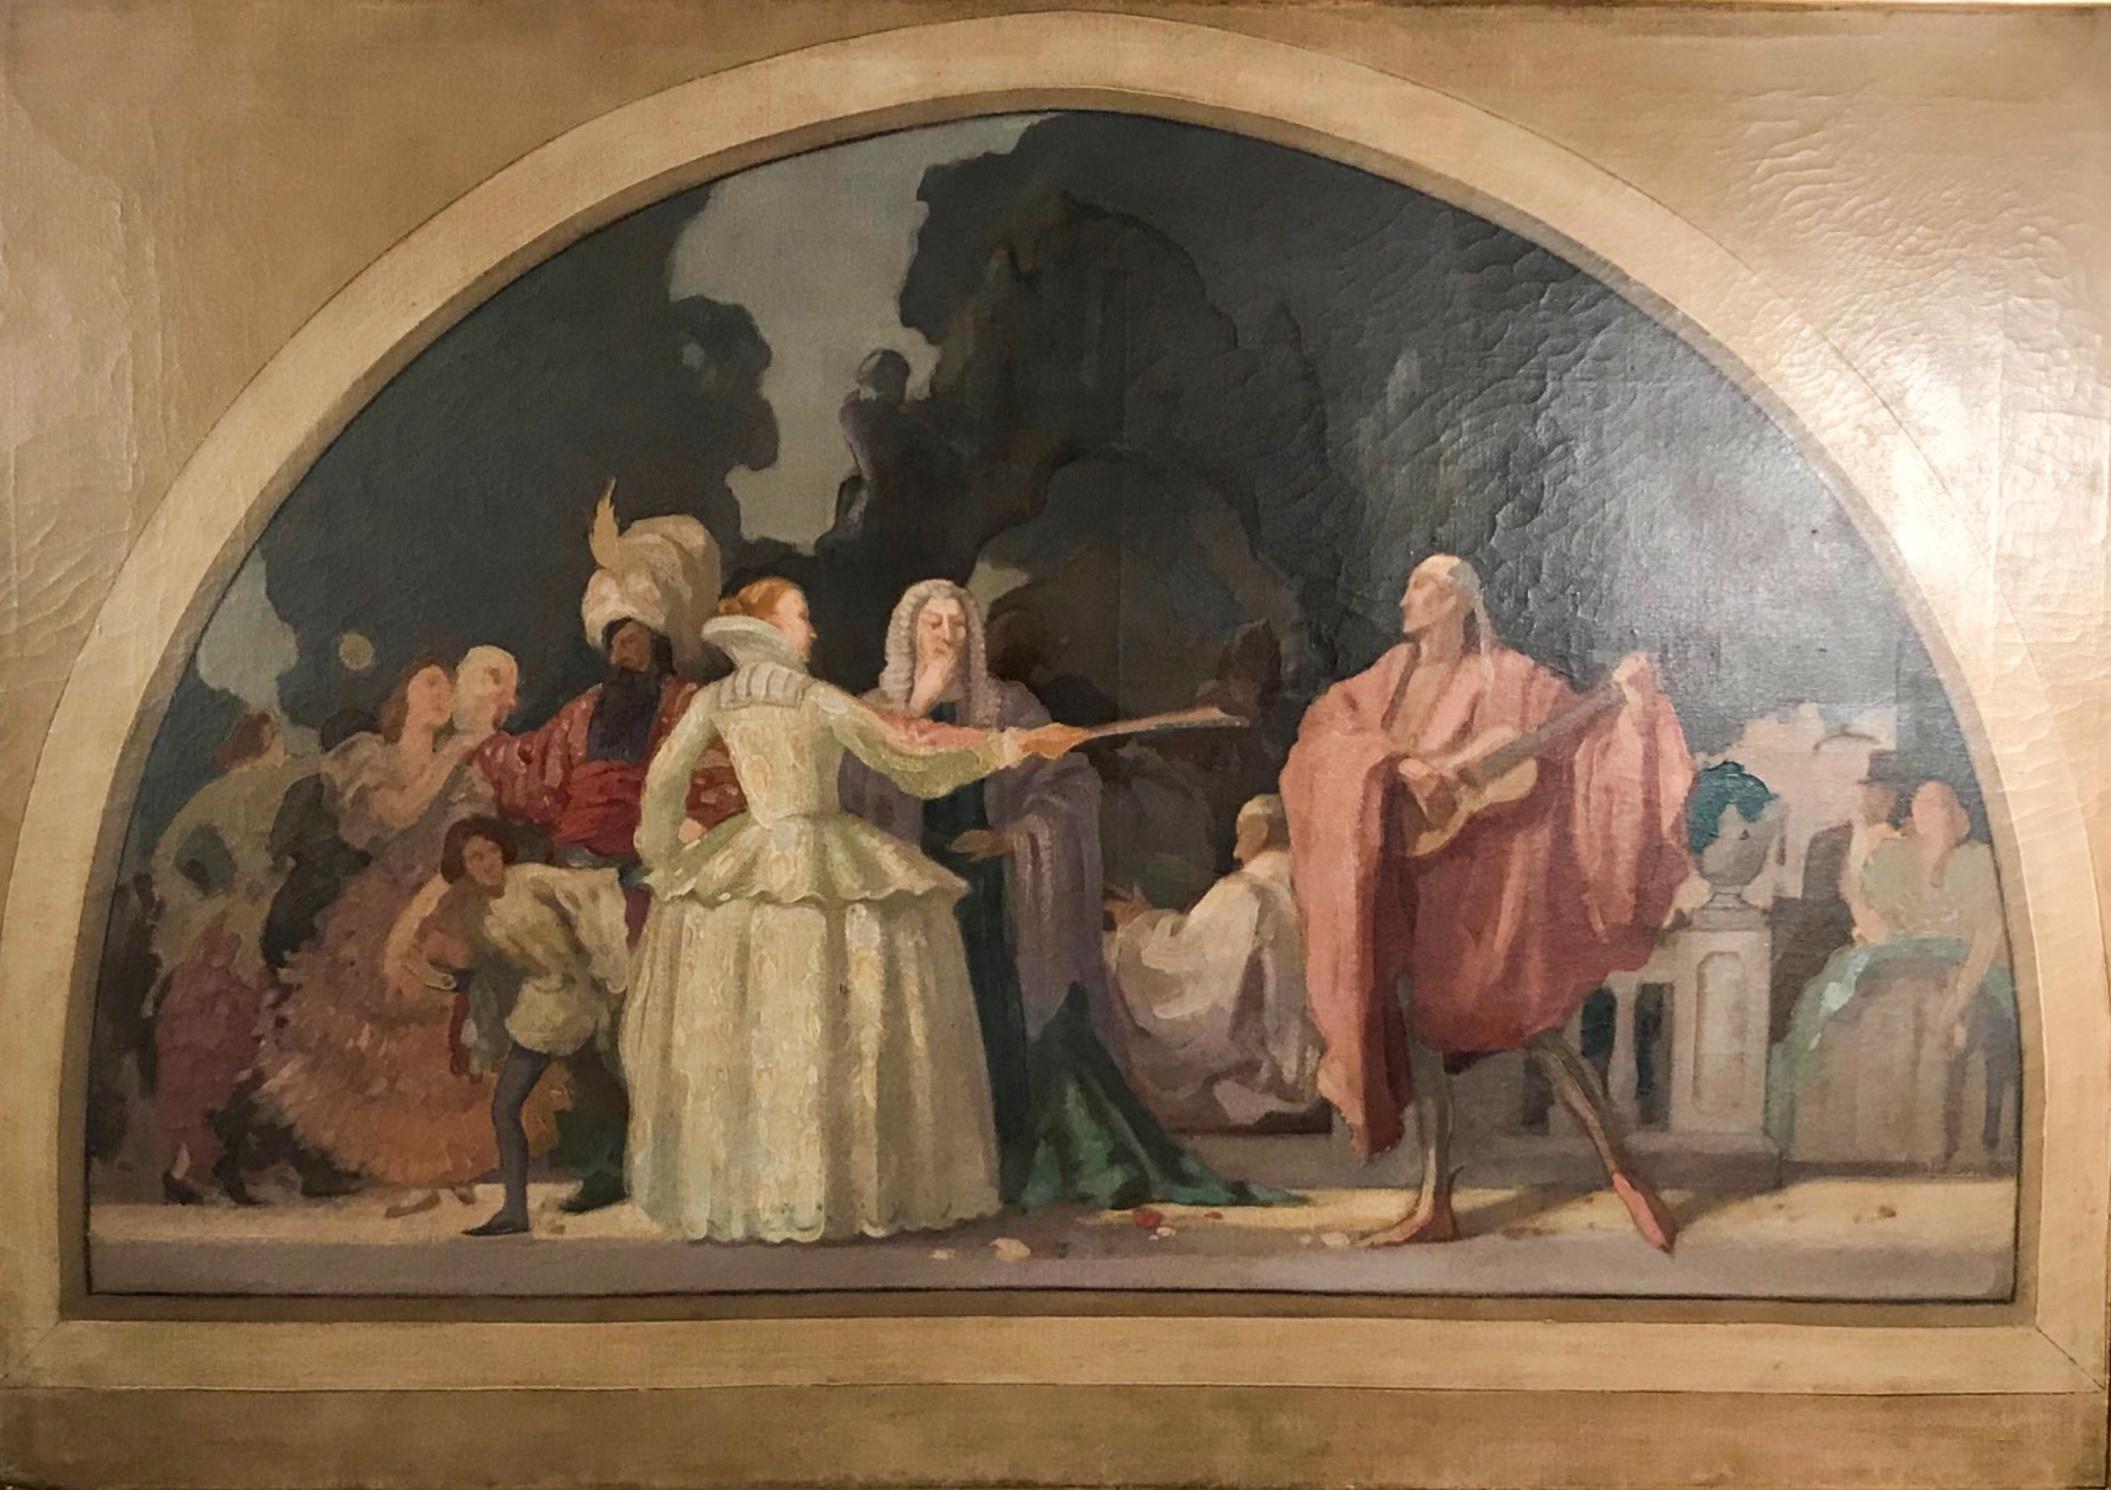 Peinture française du 19ème siècle, huile/toile attribuée à Pierre Puvis de Chavannes.

Grande étude préparatoire pour une peinture murale. Elle est peinte à l'huile sur toile et représente une scène théâtrale. La plus grande contribution